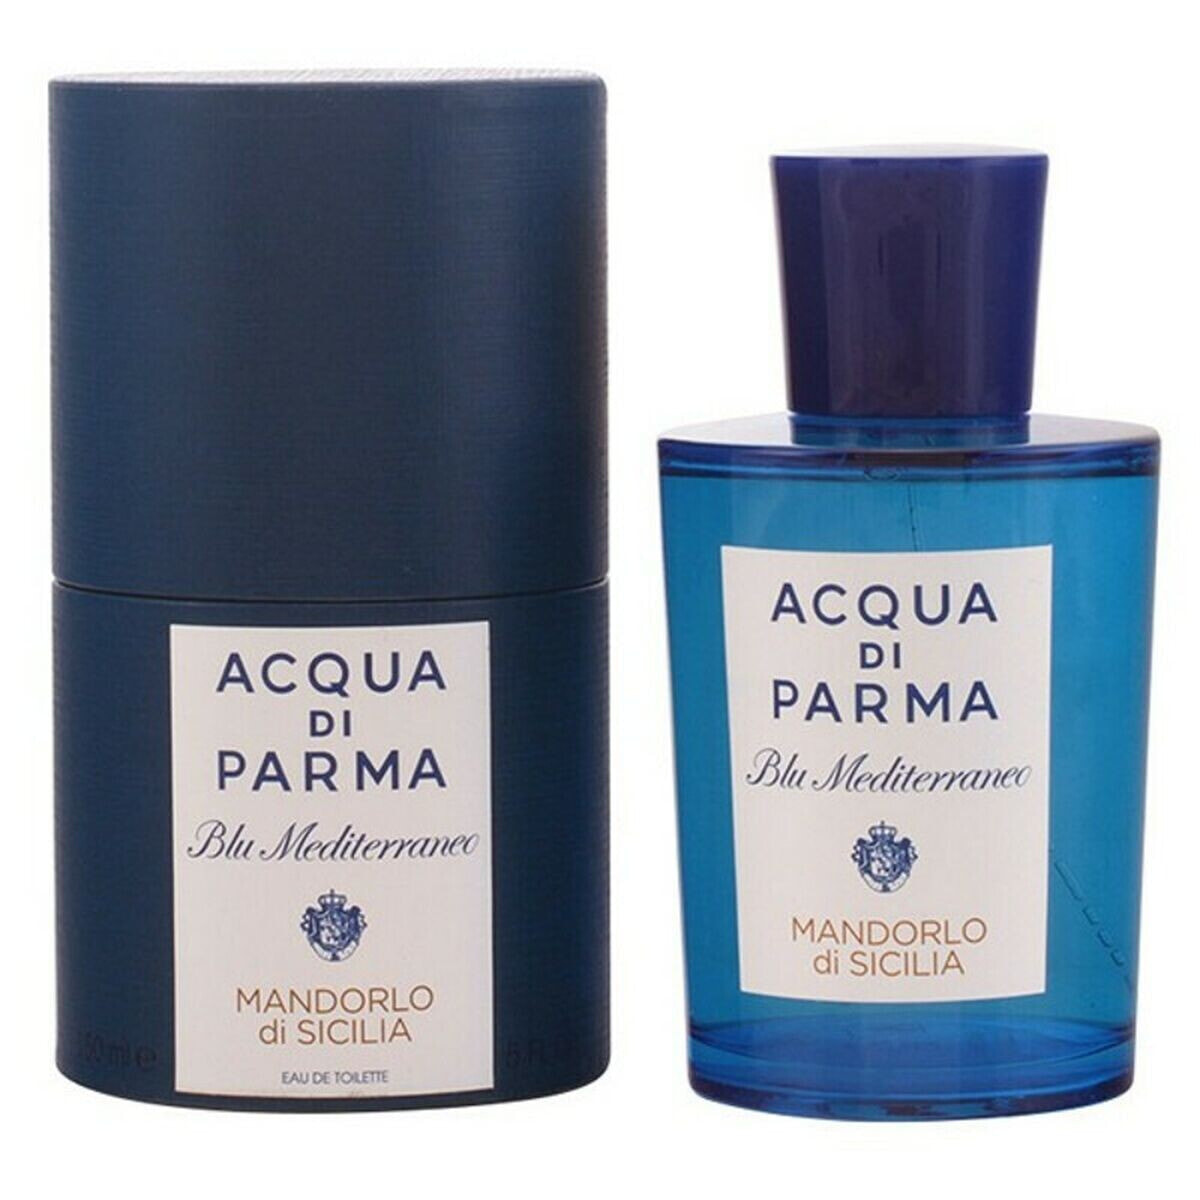 Unisex Perfume Acqua Di Parma EDT Blu Mediterraneo Mandorlo Di Sicilia 150 ml